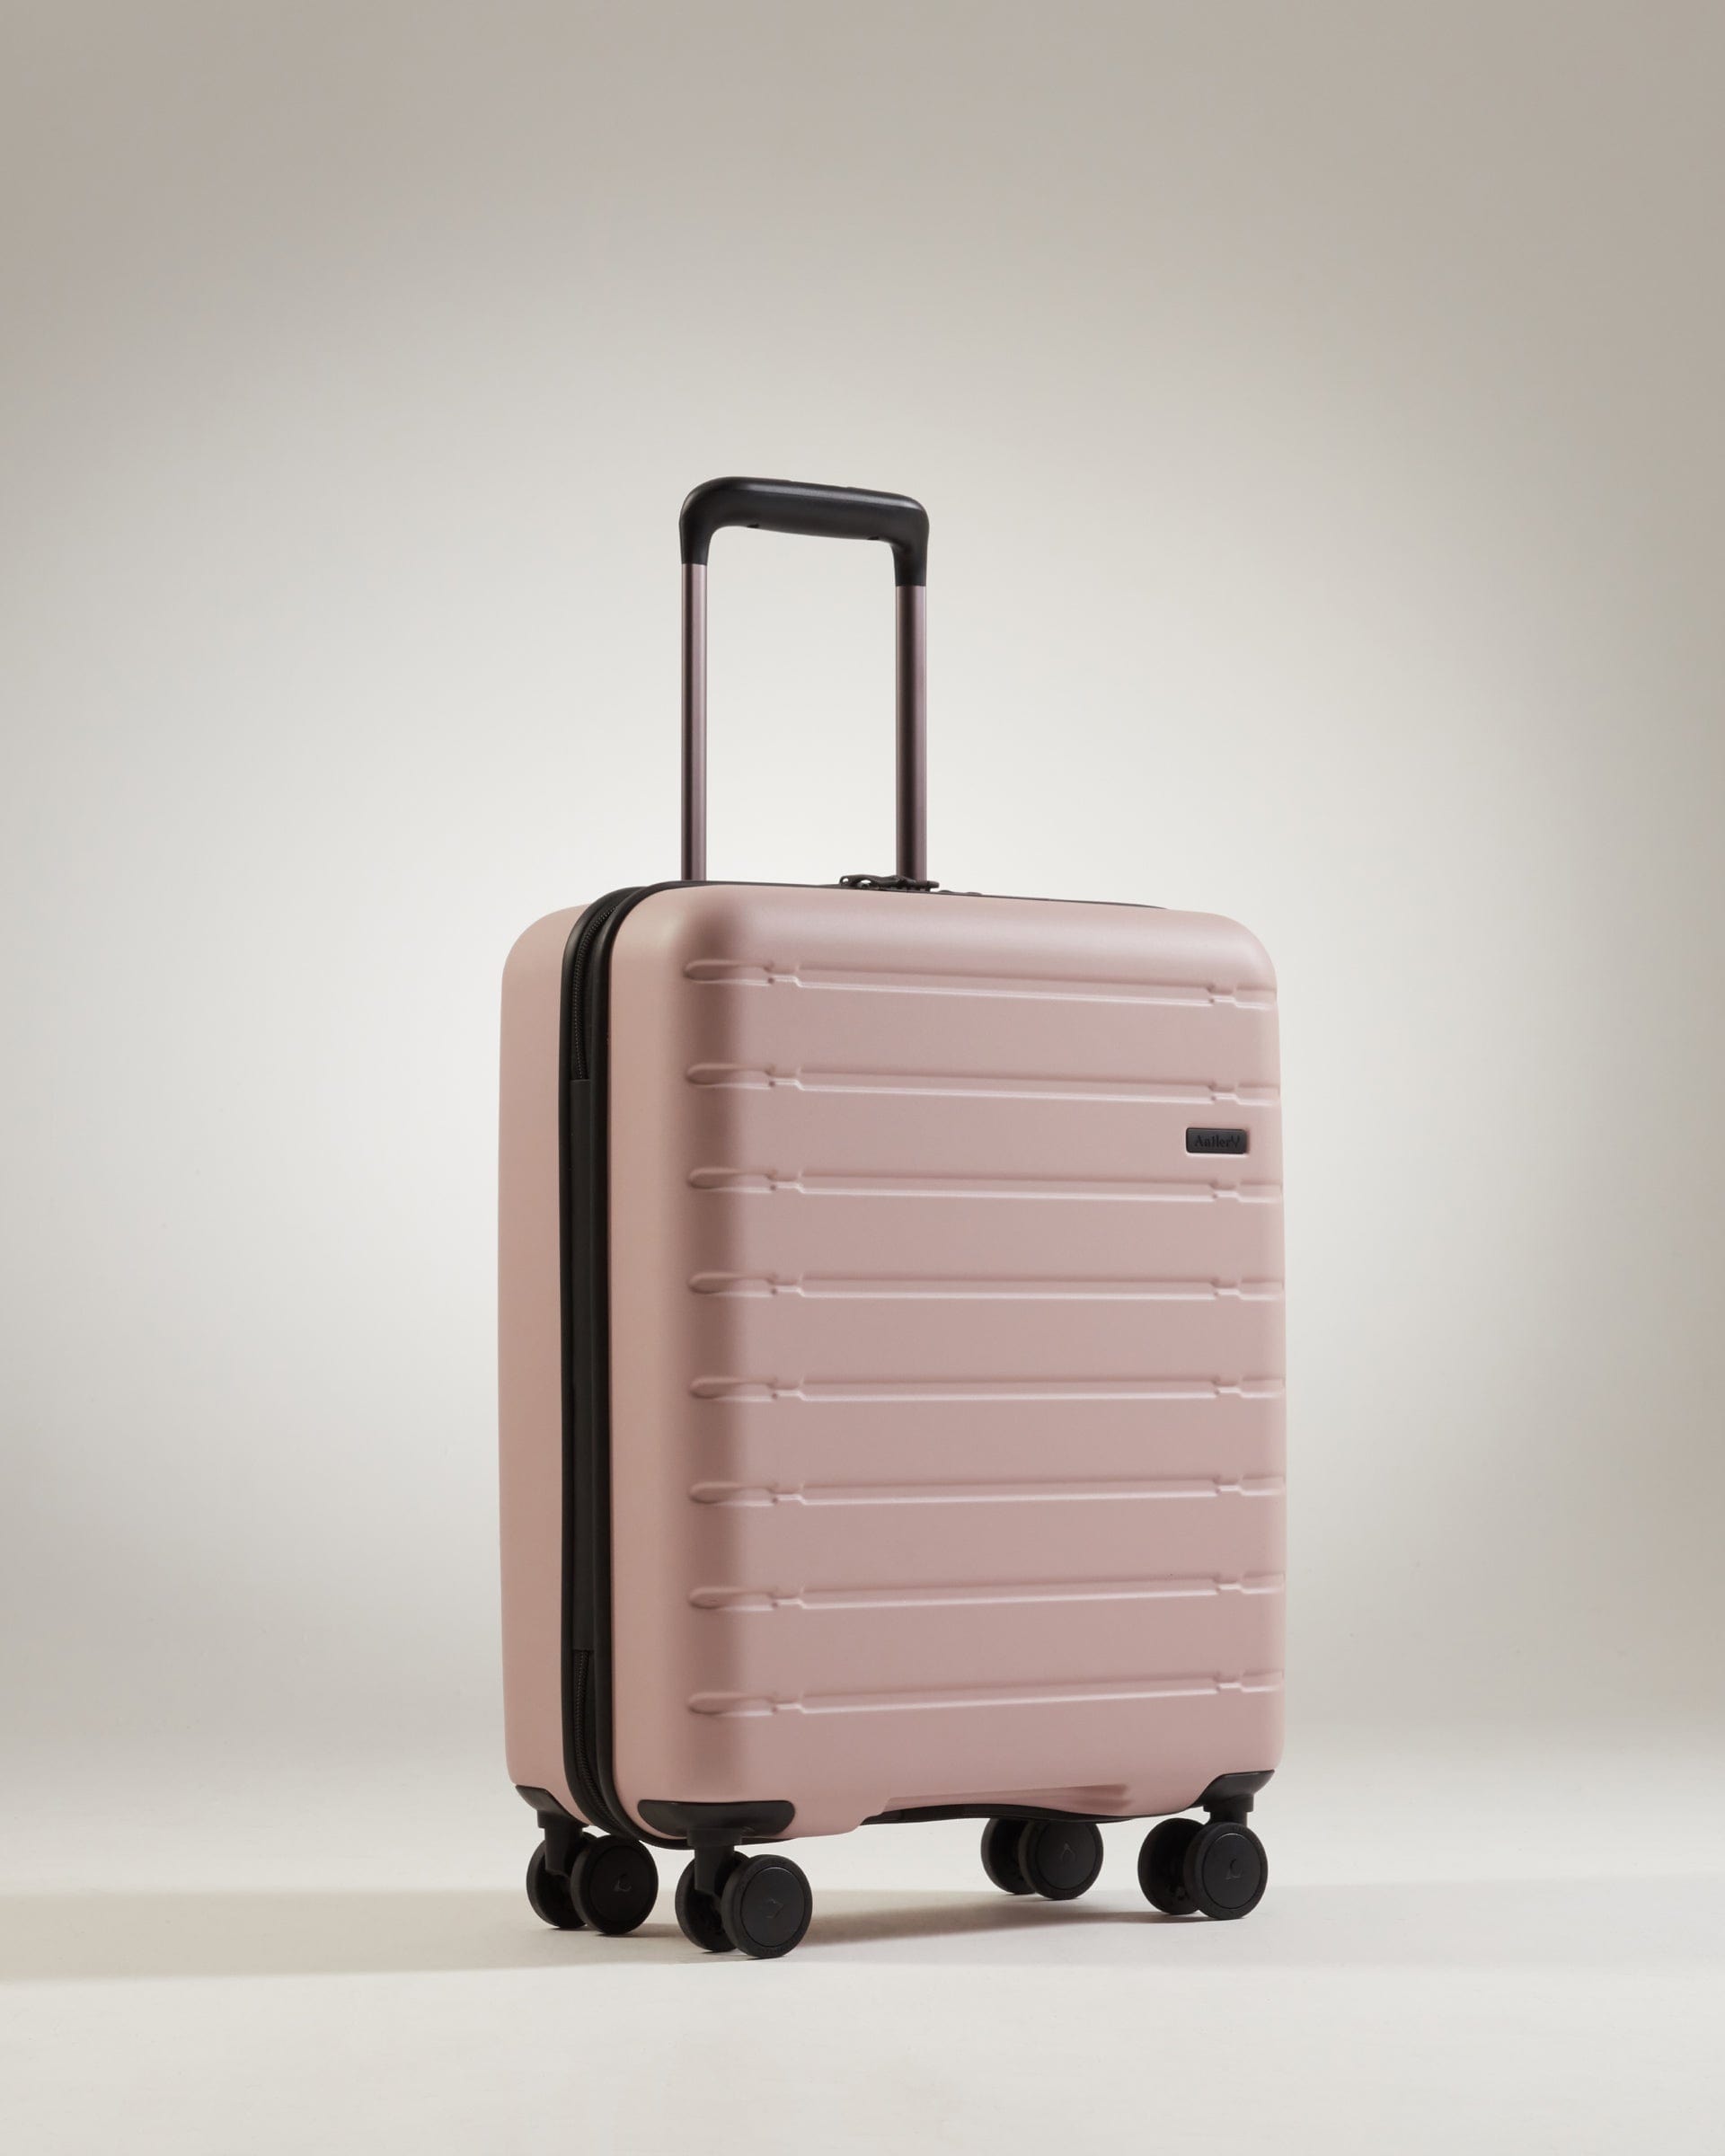 Antler Luggage -  Stamford cabin in putty - Hard Suitcases Stamford Cabin Suitcase Putty (Pink) | Hard Luggage | Antler UK